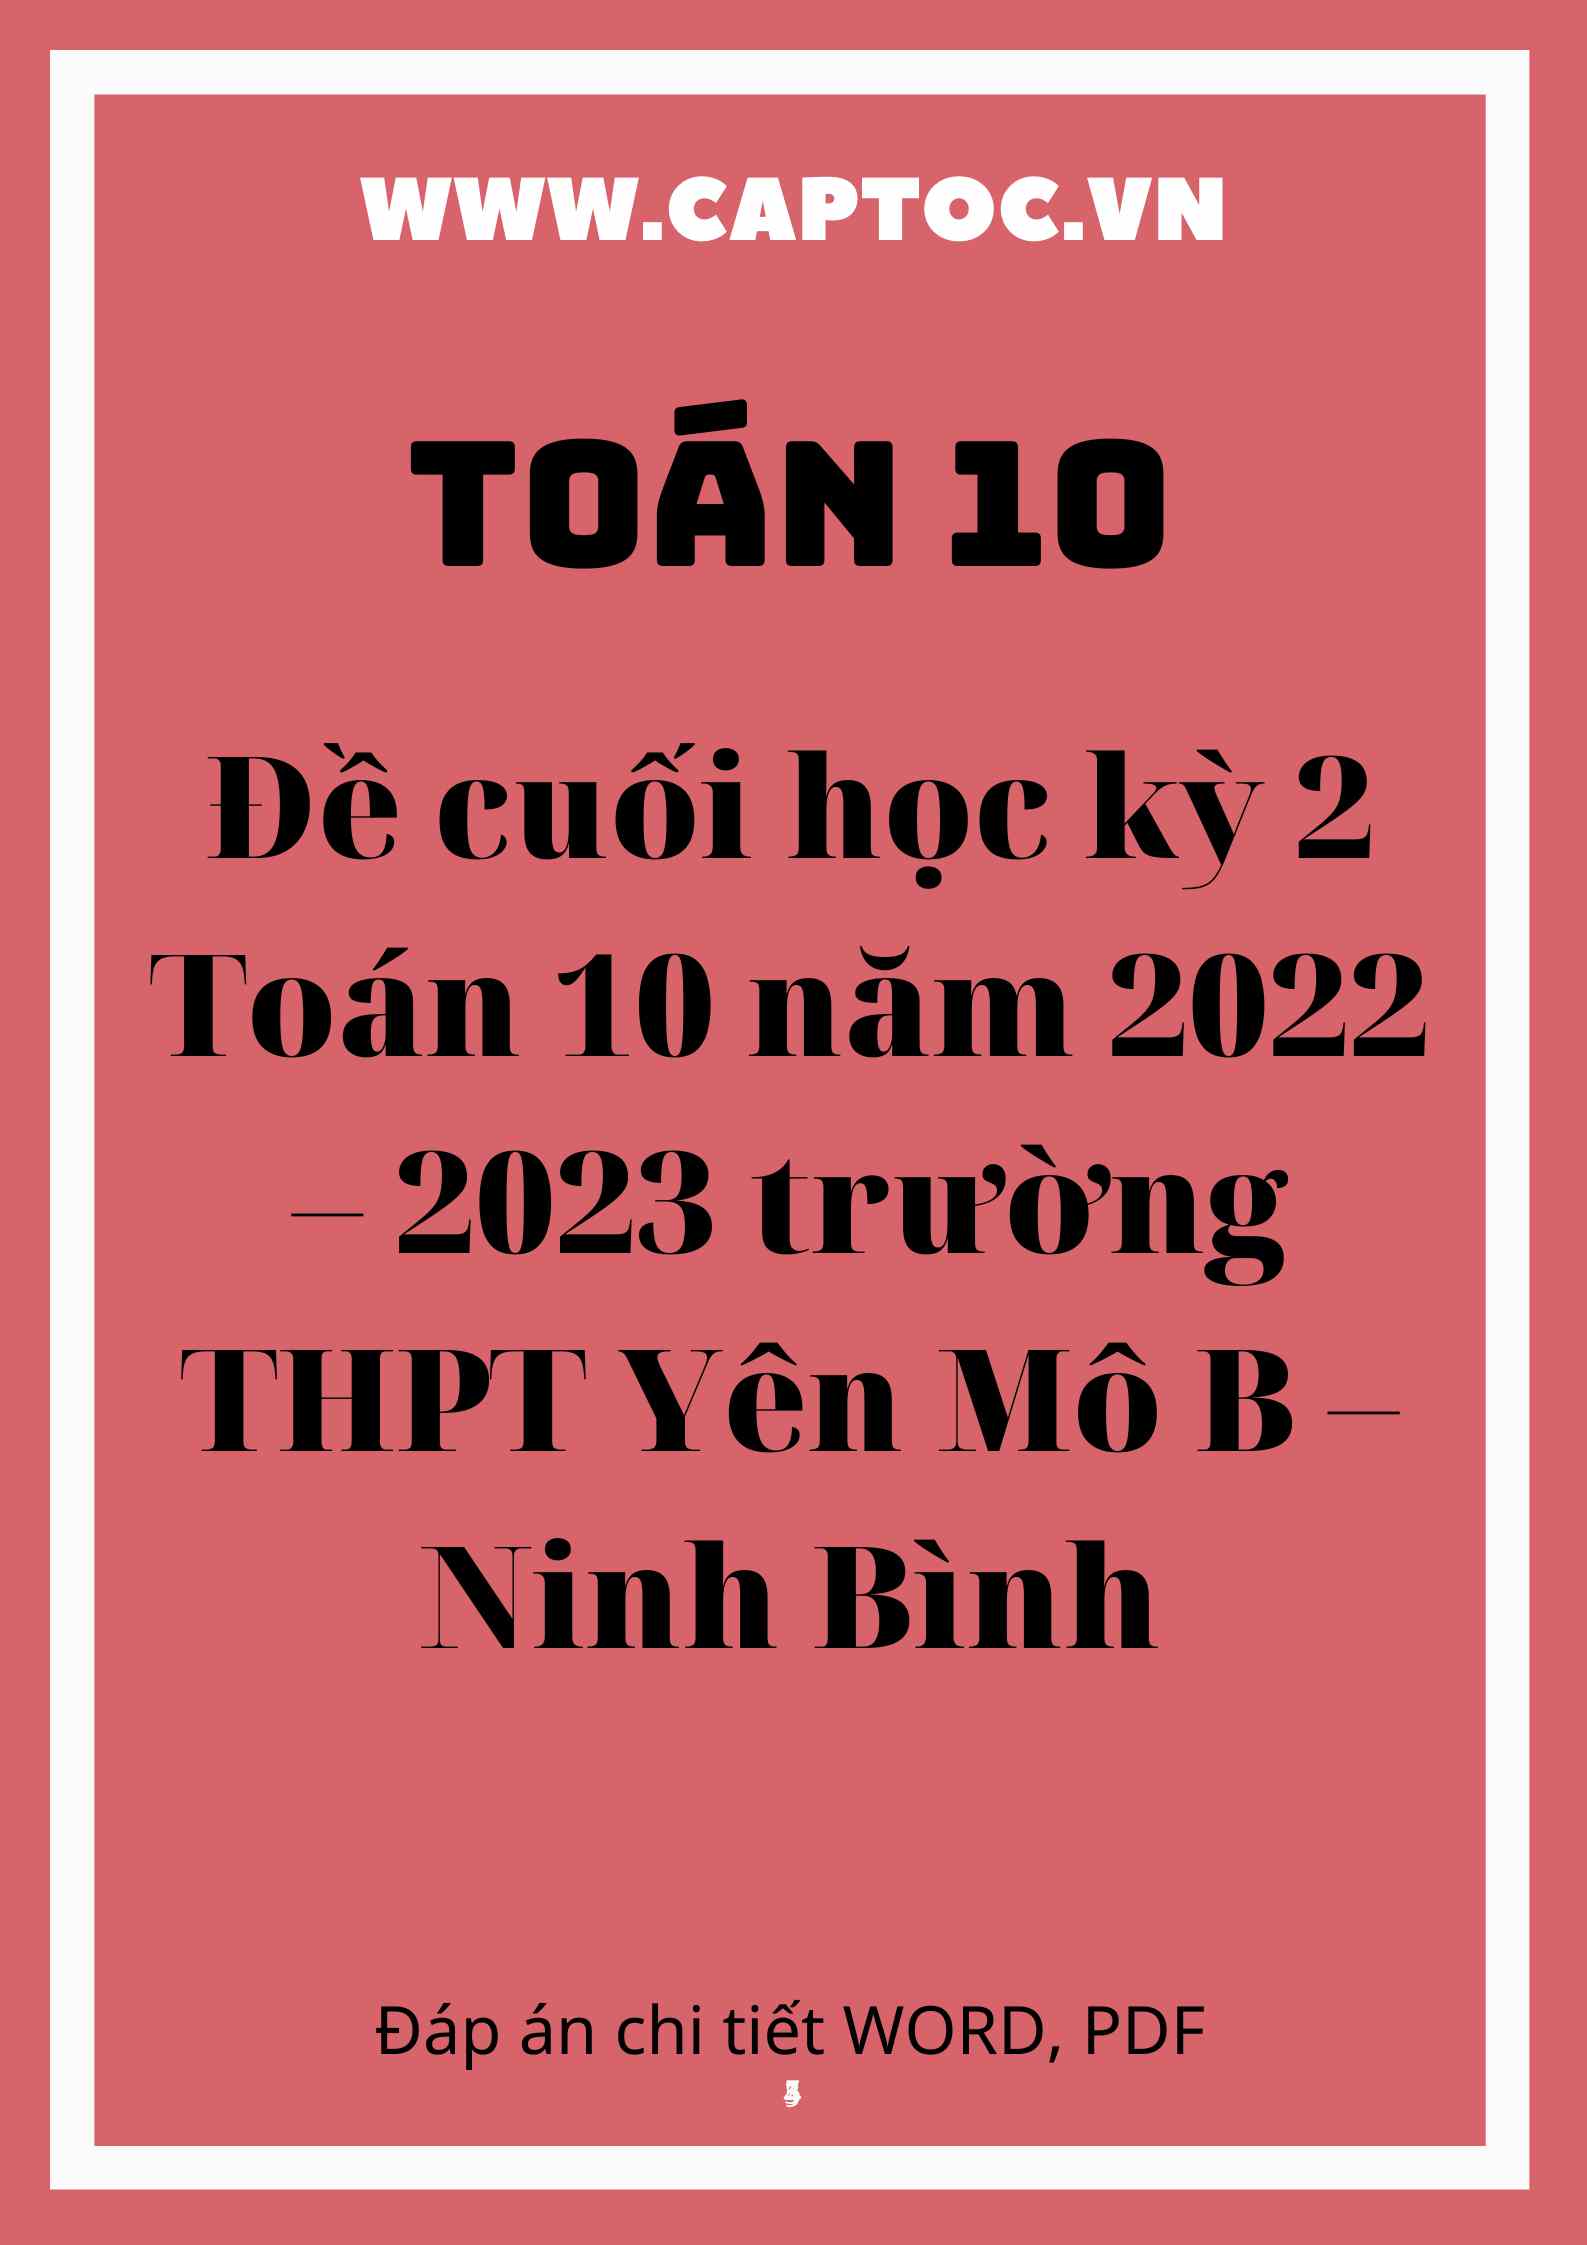 Đề cuối học kỳ 2 Toán 10 năm 2022 – 2023 trường THPT Yên Mô B – Ninh Bình